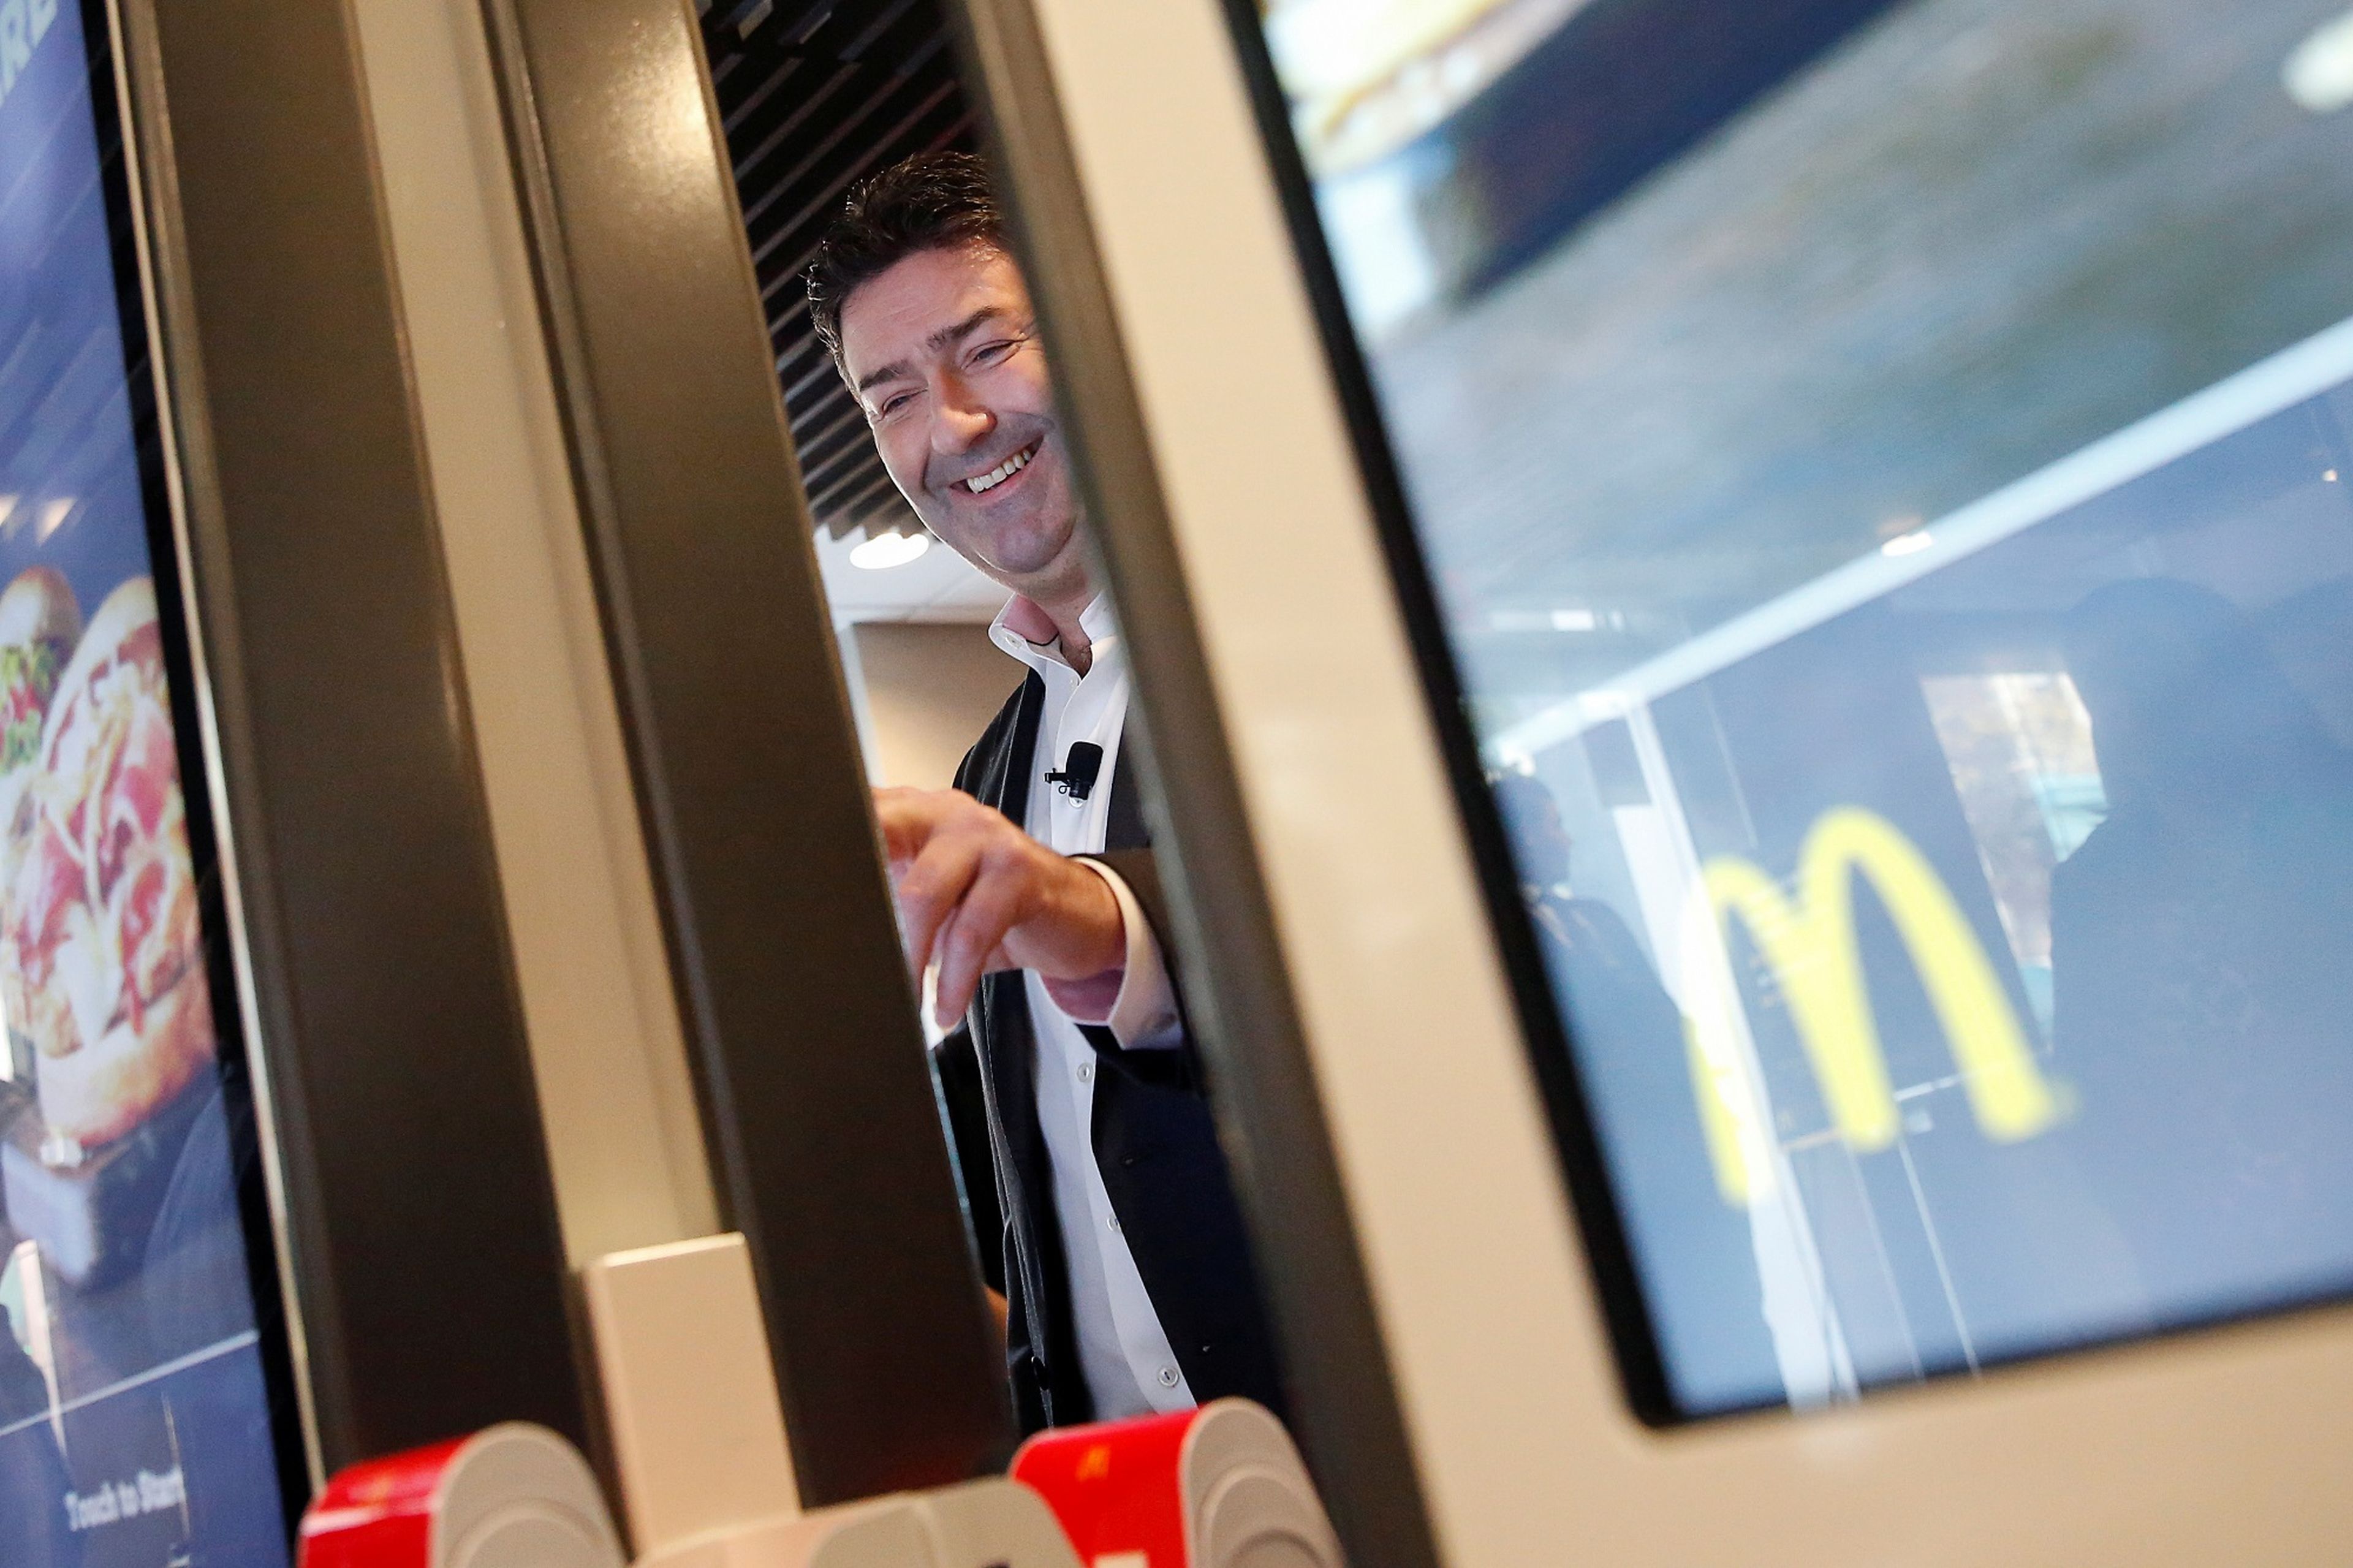 El CEO de McDonald's, Steve Easterbrook, en un puesto para pedir su menú.